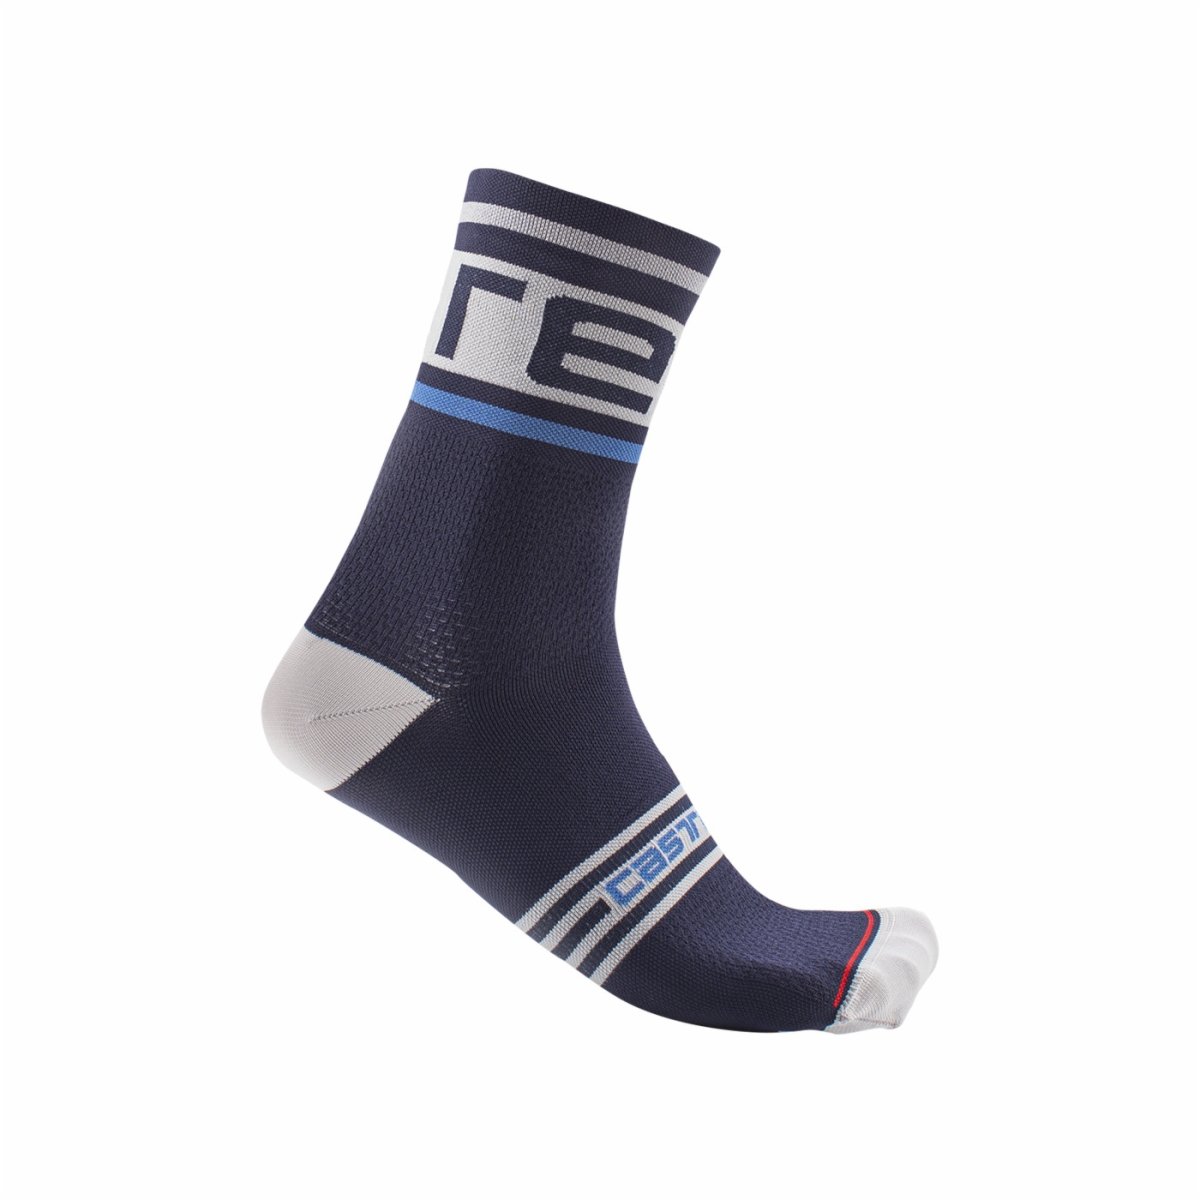 Castelli Rosso Prologo 15 Men's Cycling Socks (Belgian Blue)